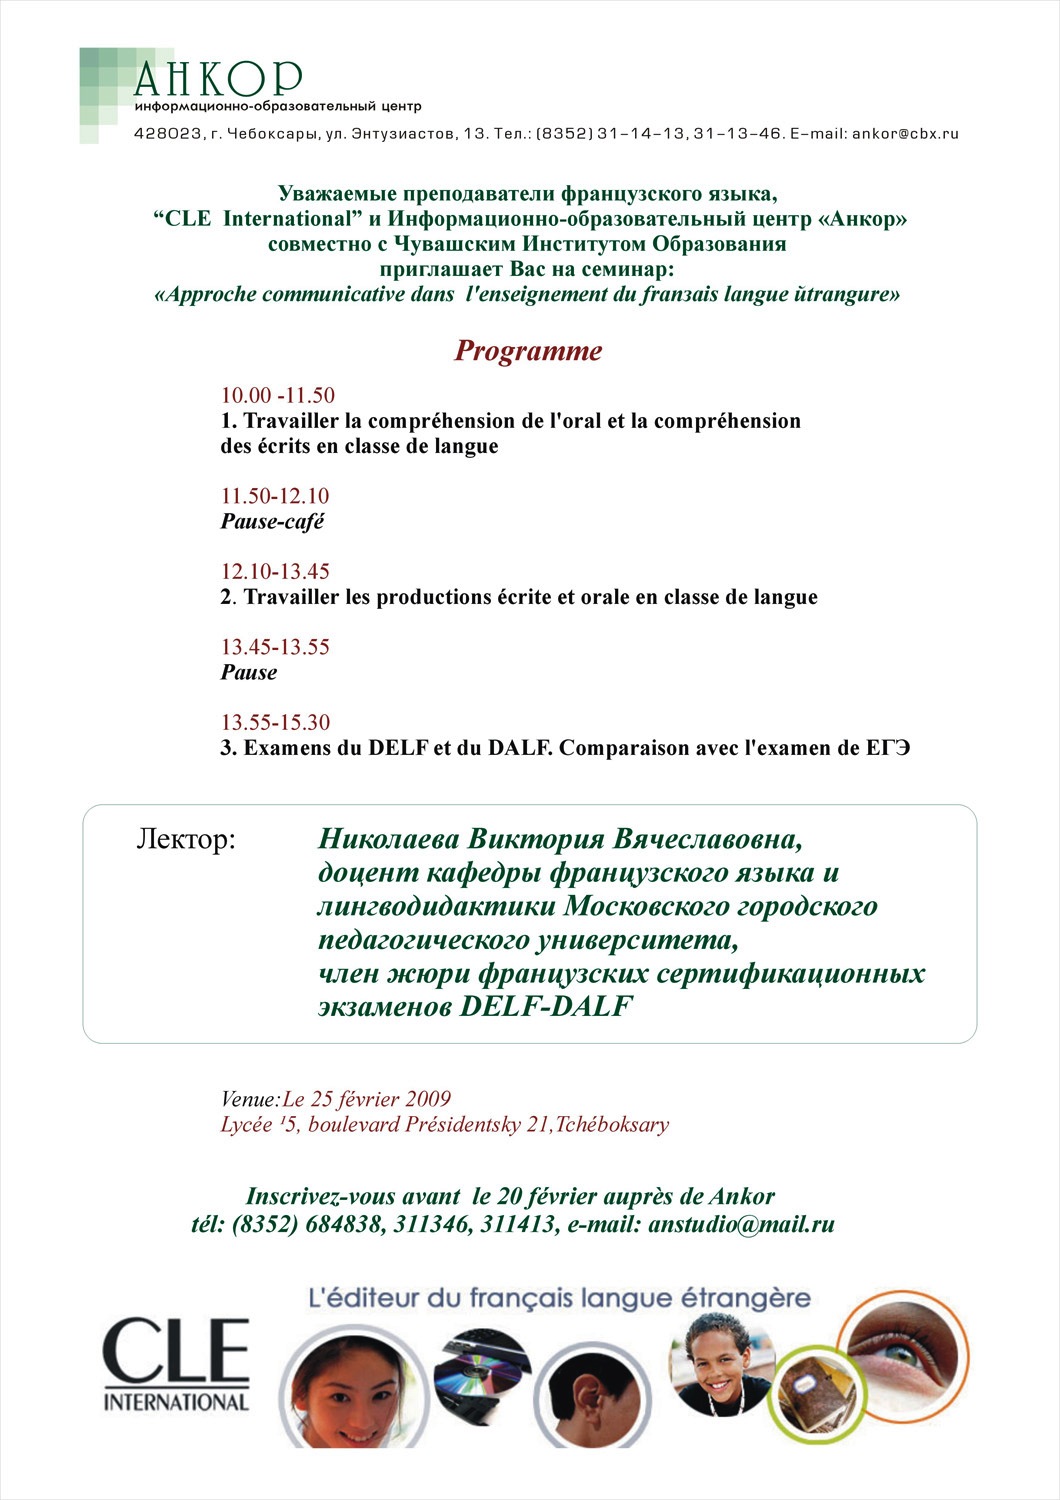 Приглашаем учителей французского языка на семинар “Approche communicative dans l’enseignement du français langue étrangère”